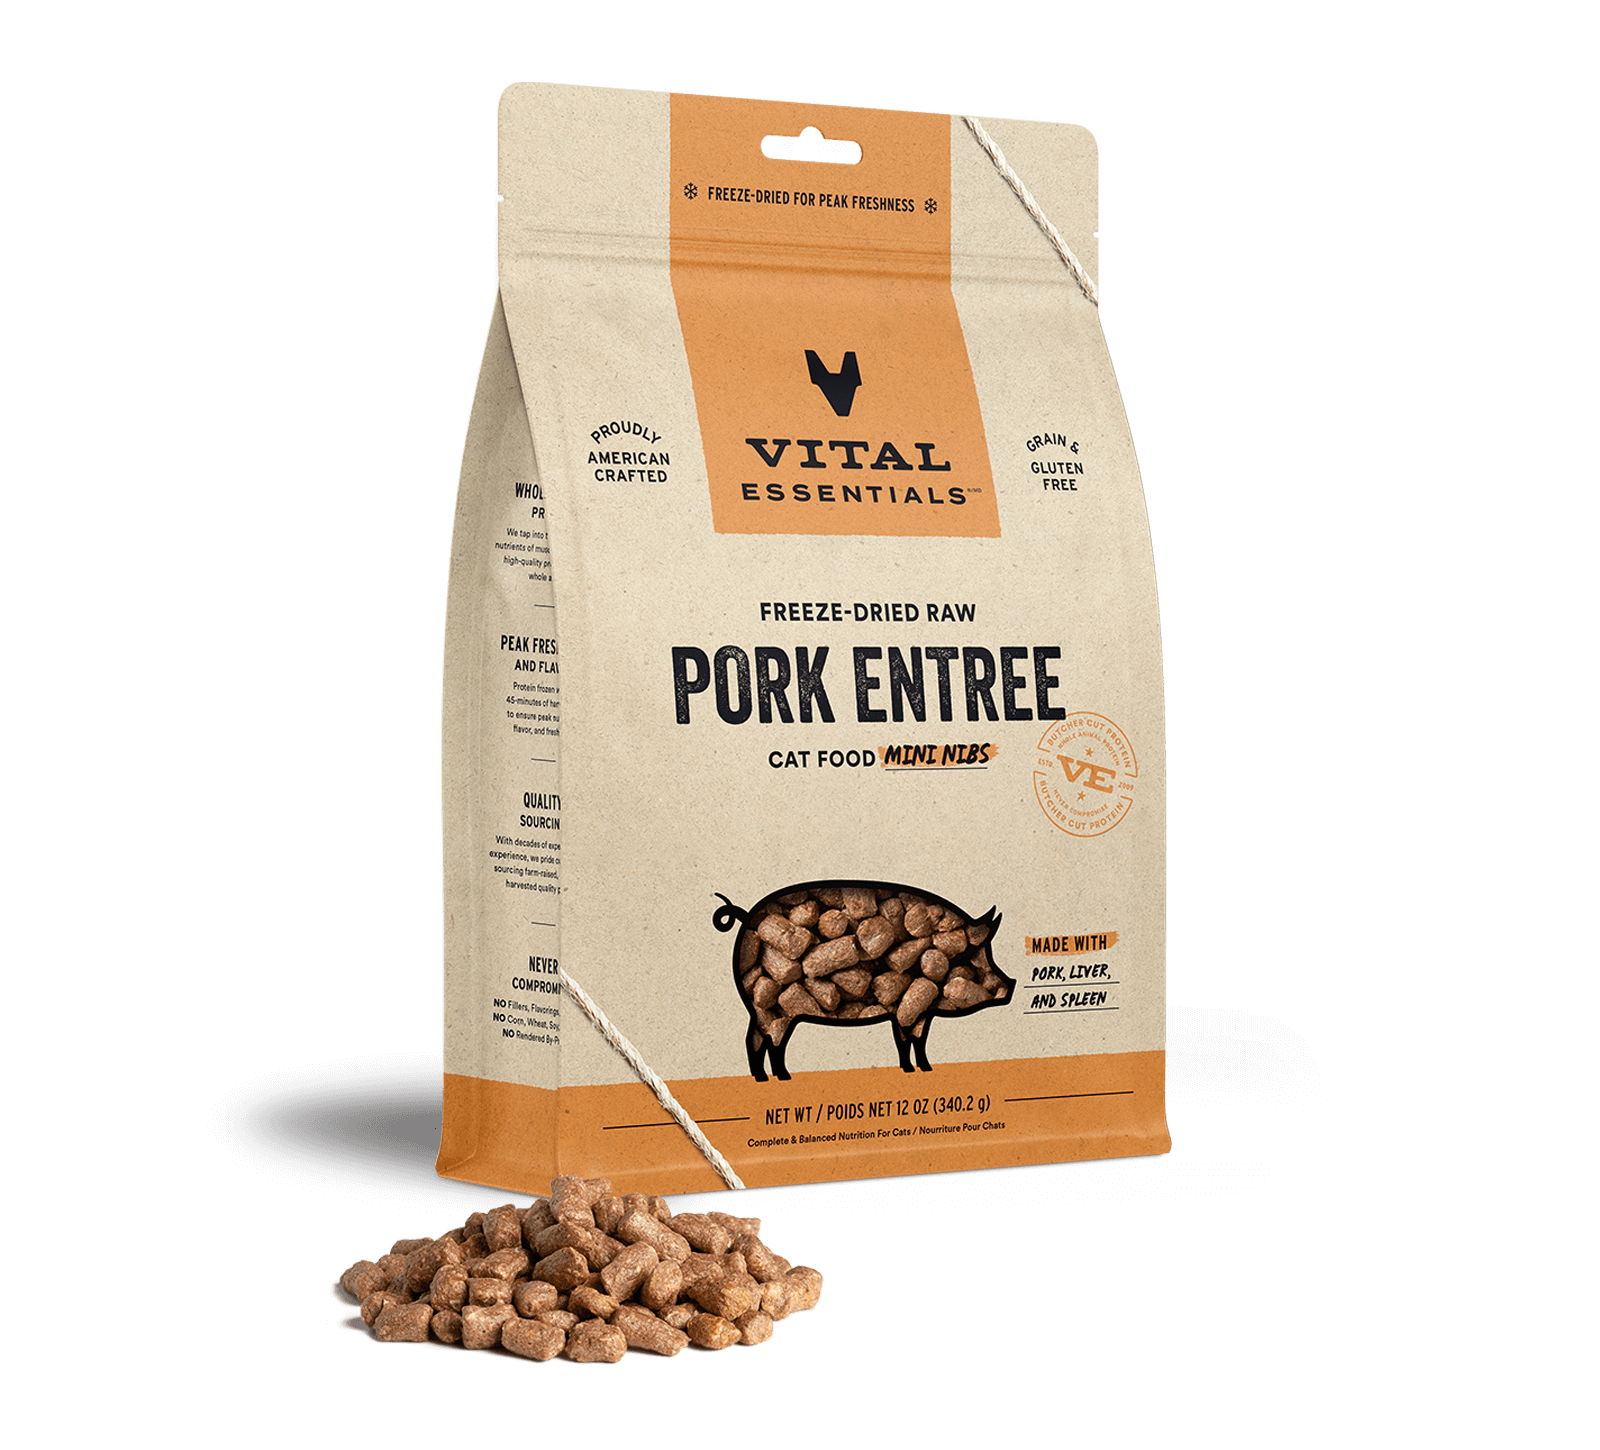 Vital Essentials Freeze-Dried Raw Pork Entree Cat Food Mini Nibs, 12 oz - Health/First Aid